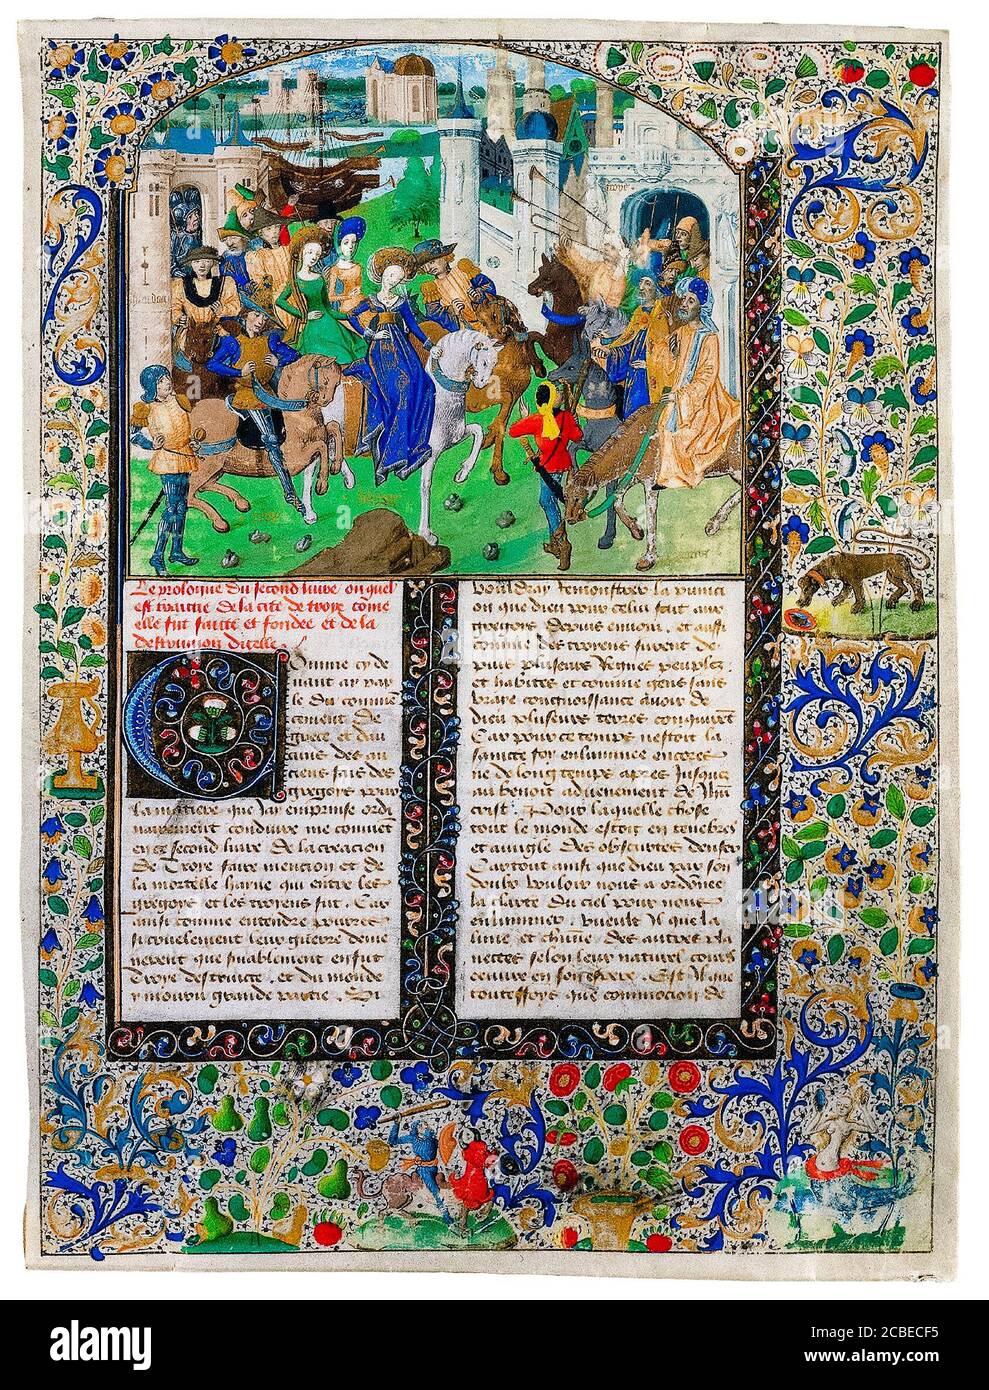 Il re Priam incontra Helen di Troia e Parigi, fuori dalle porte di Troia, manoscritto illuminato del XV secolo intorno al 1470 Foto Stock